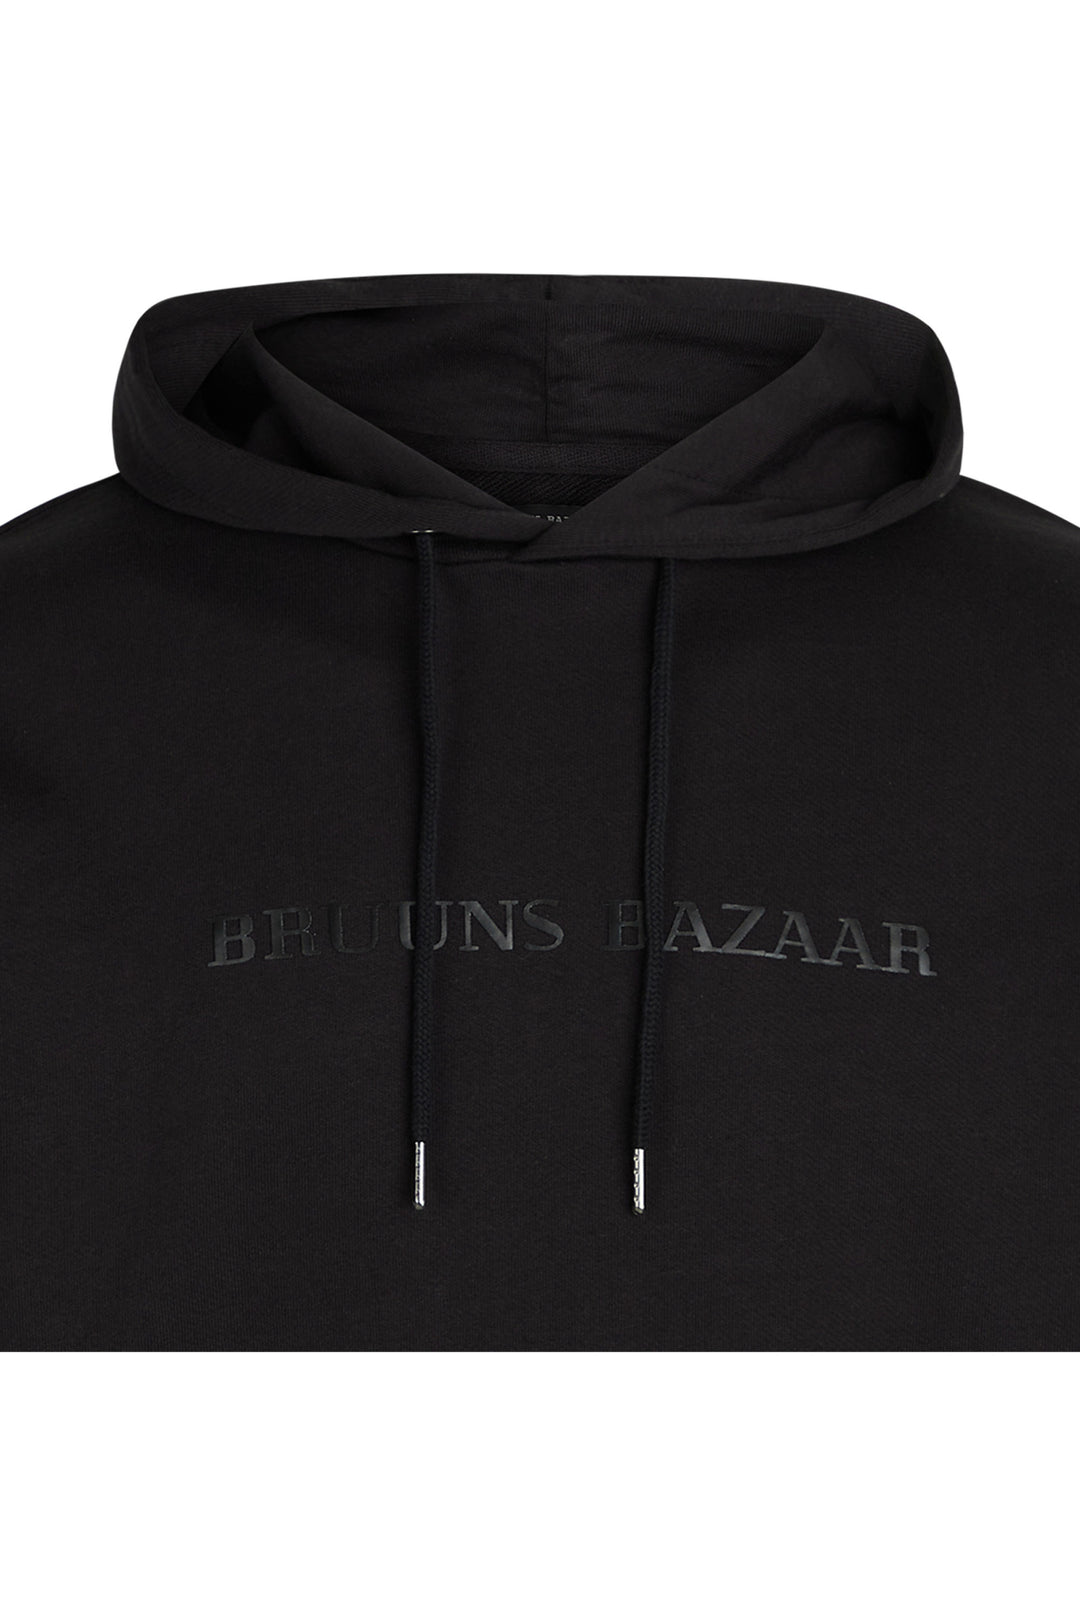 Bruuns Bazaar Men BertilBB hoodie Sweatshirt Black